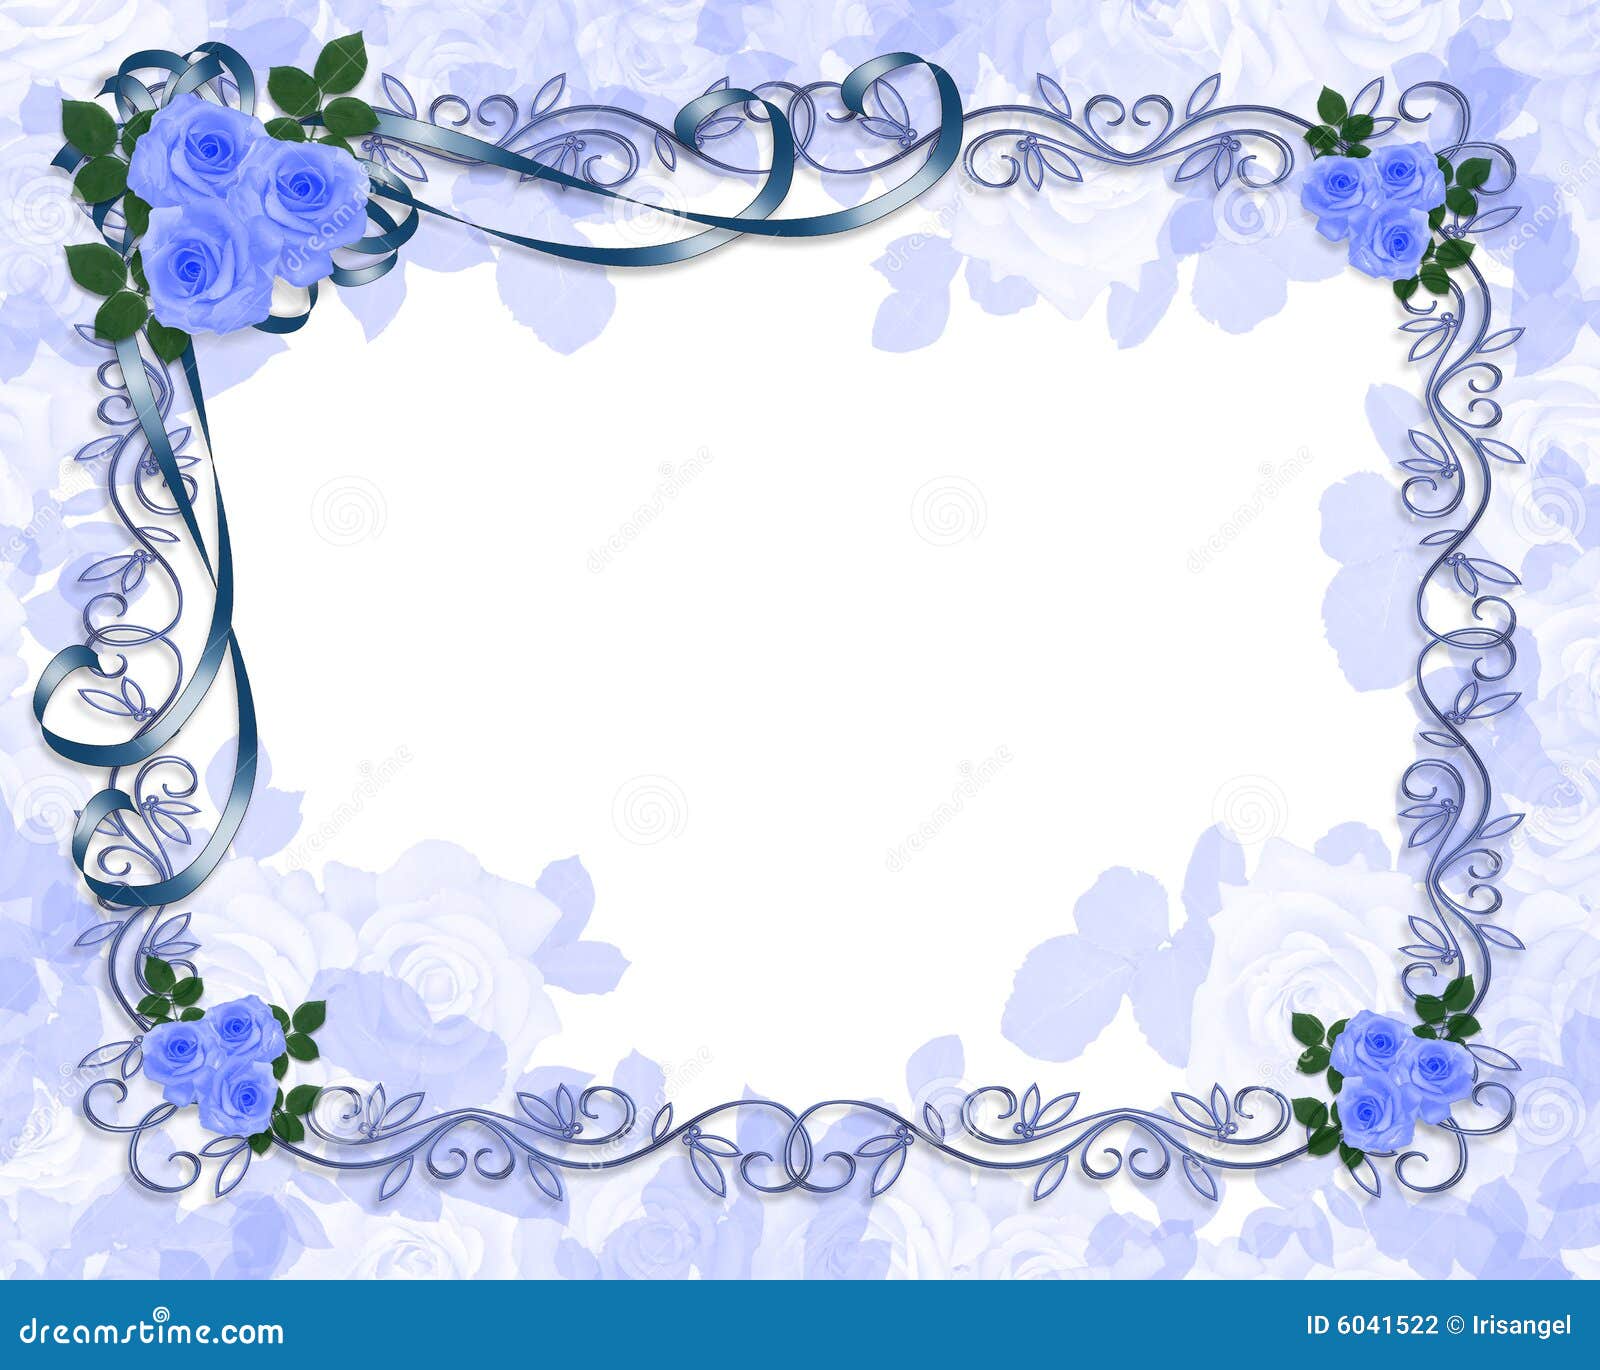 Blue Roses Wedding Invitation Stock Illustration - Image 